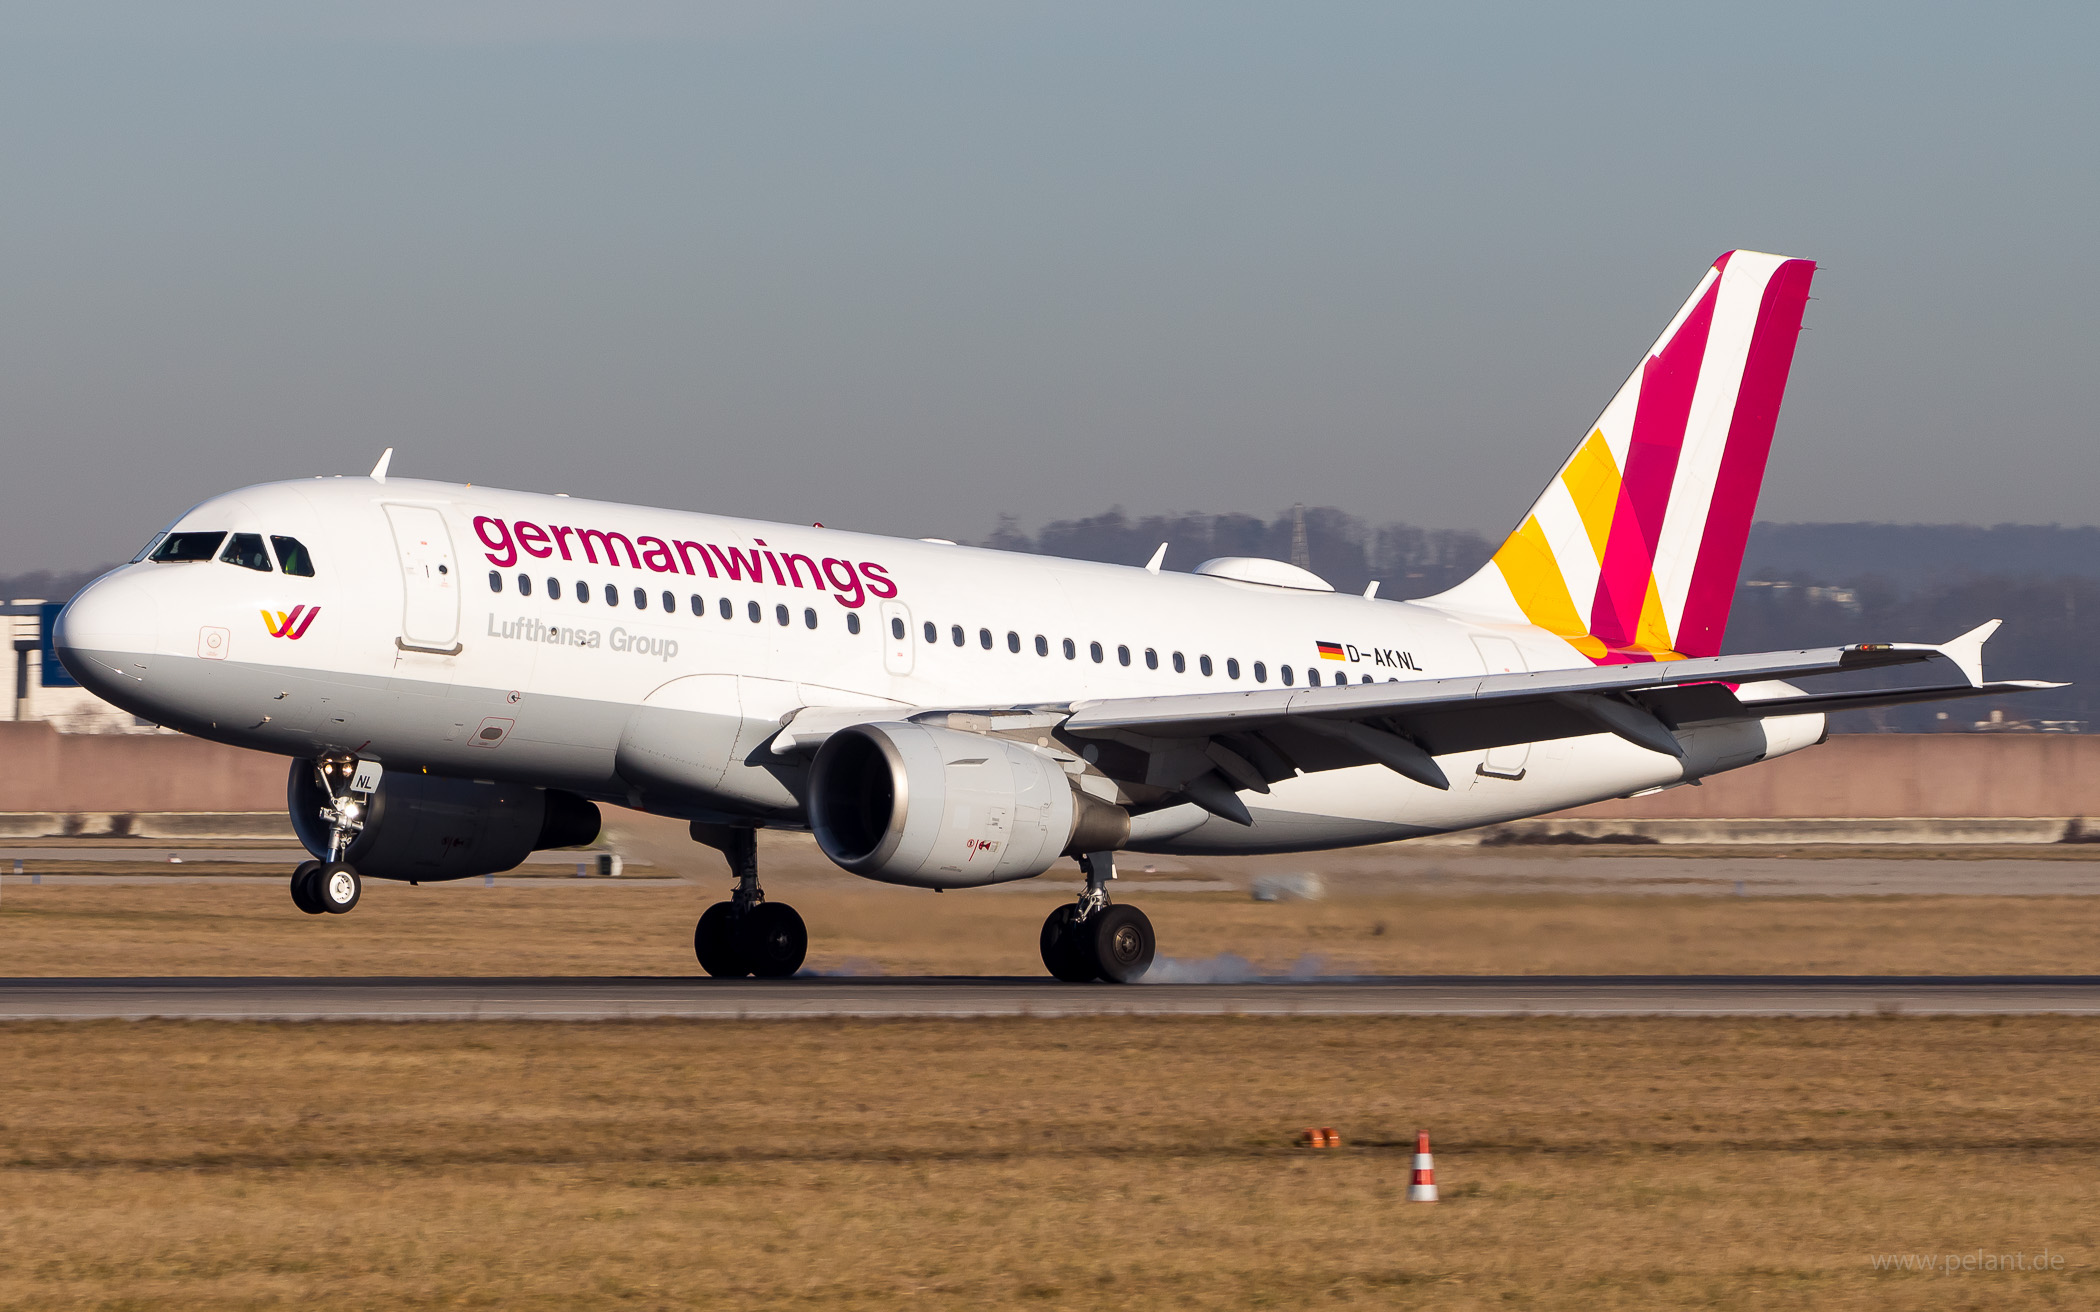 D-AKNL Germanwings Airbus A319-112 in Stuttgart / STR